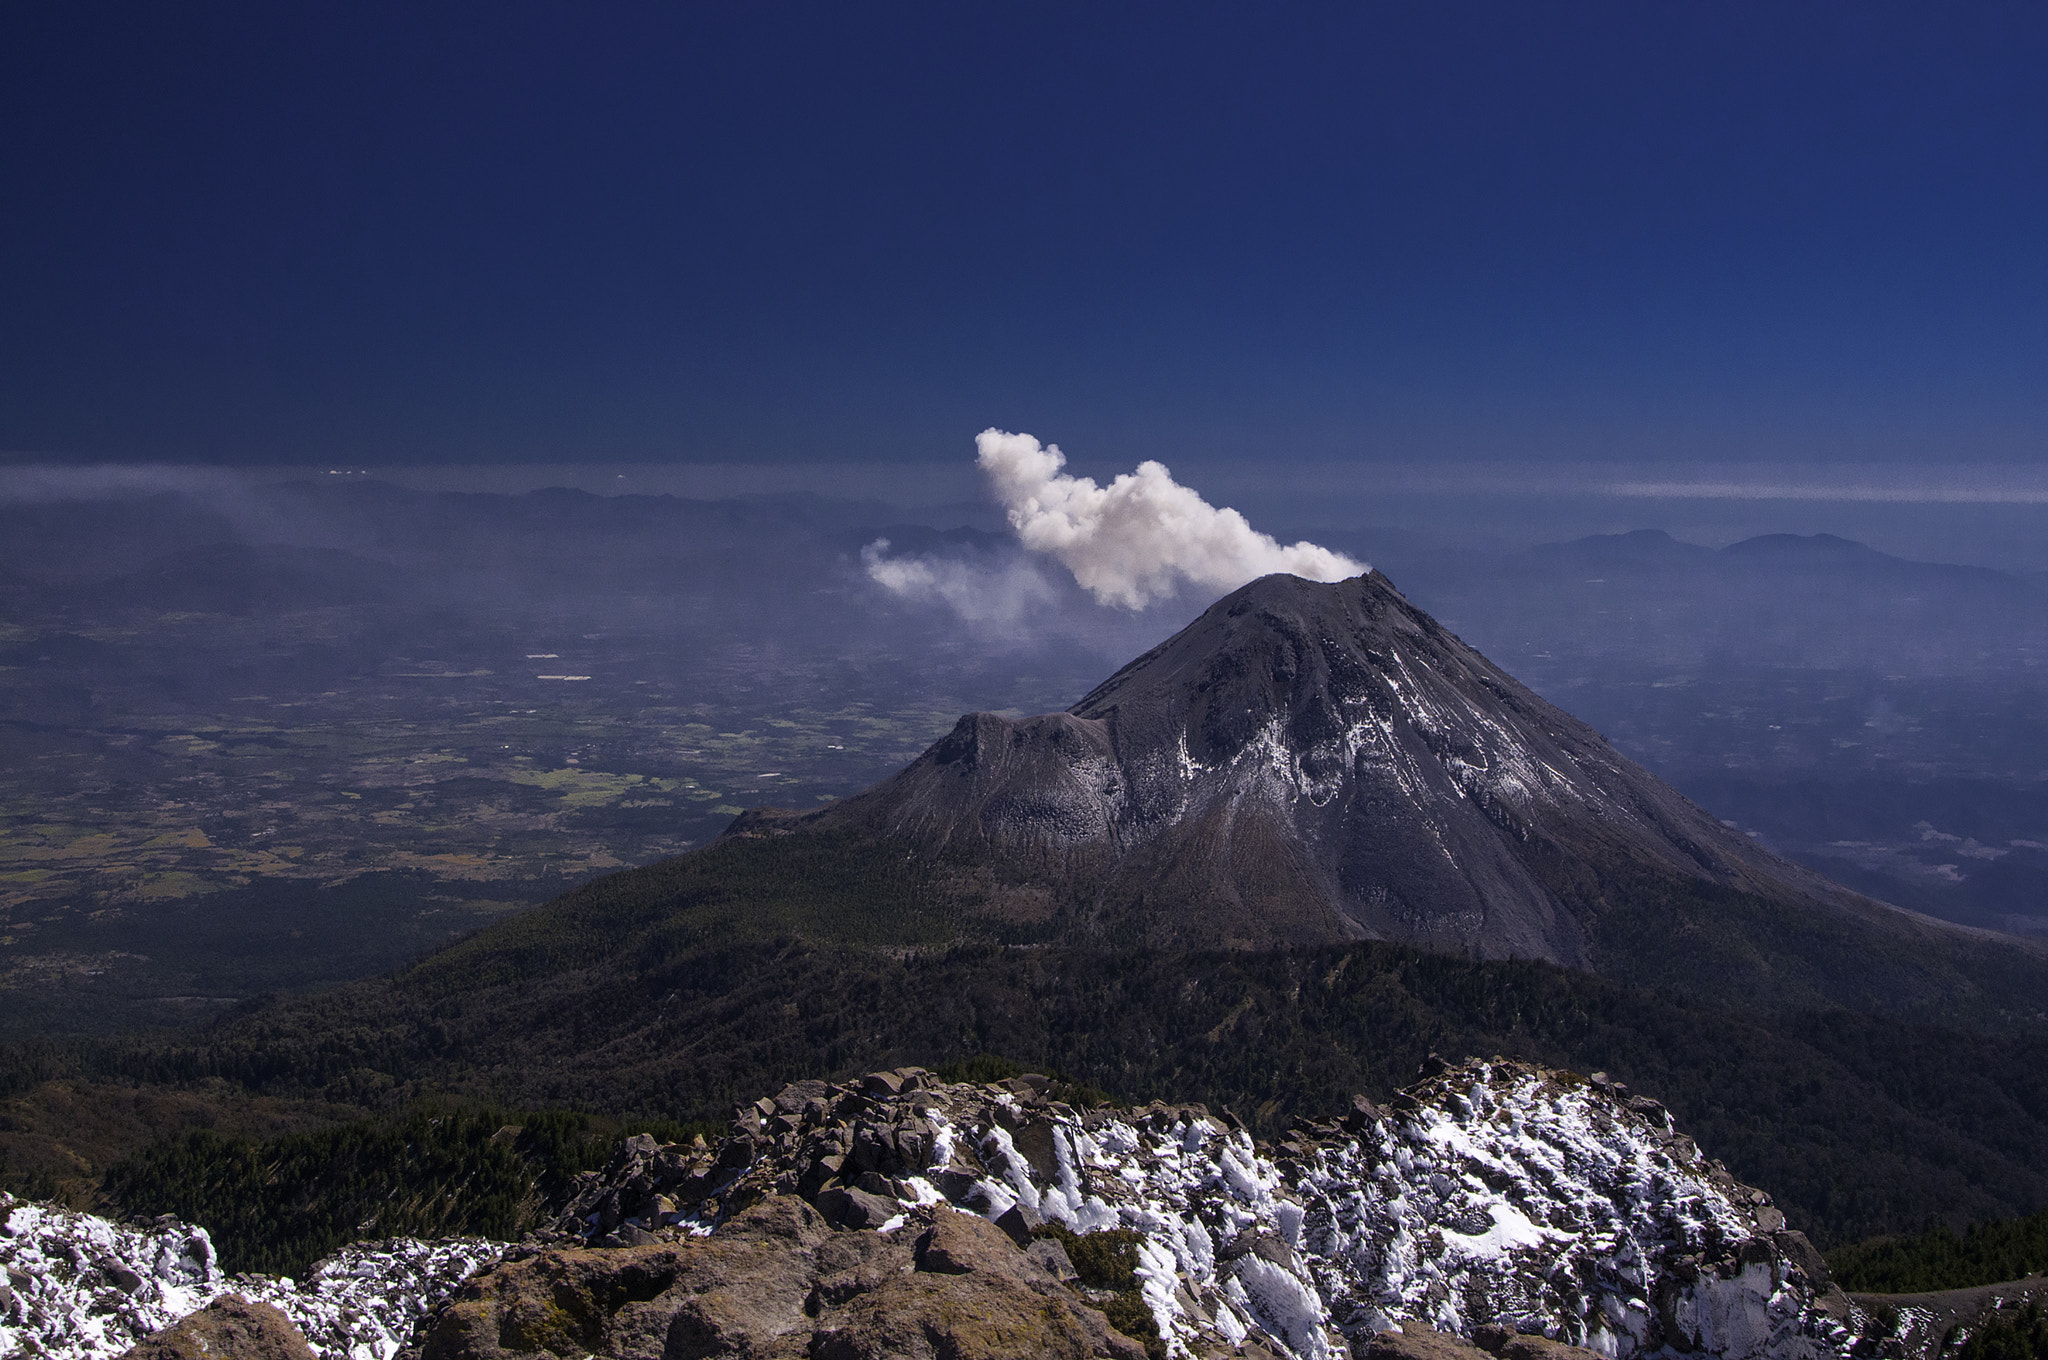 Nikon D300 sample photo. Volcan de fuego, colima, méxico. photography